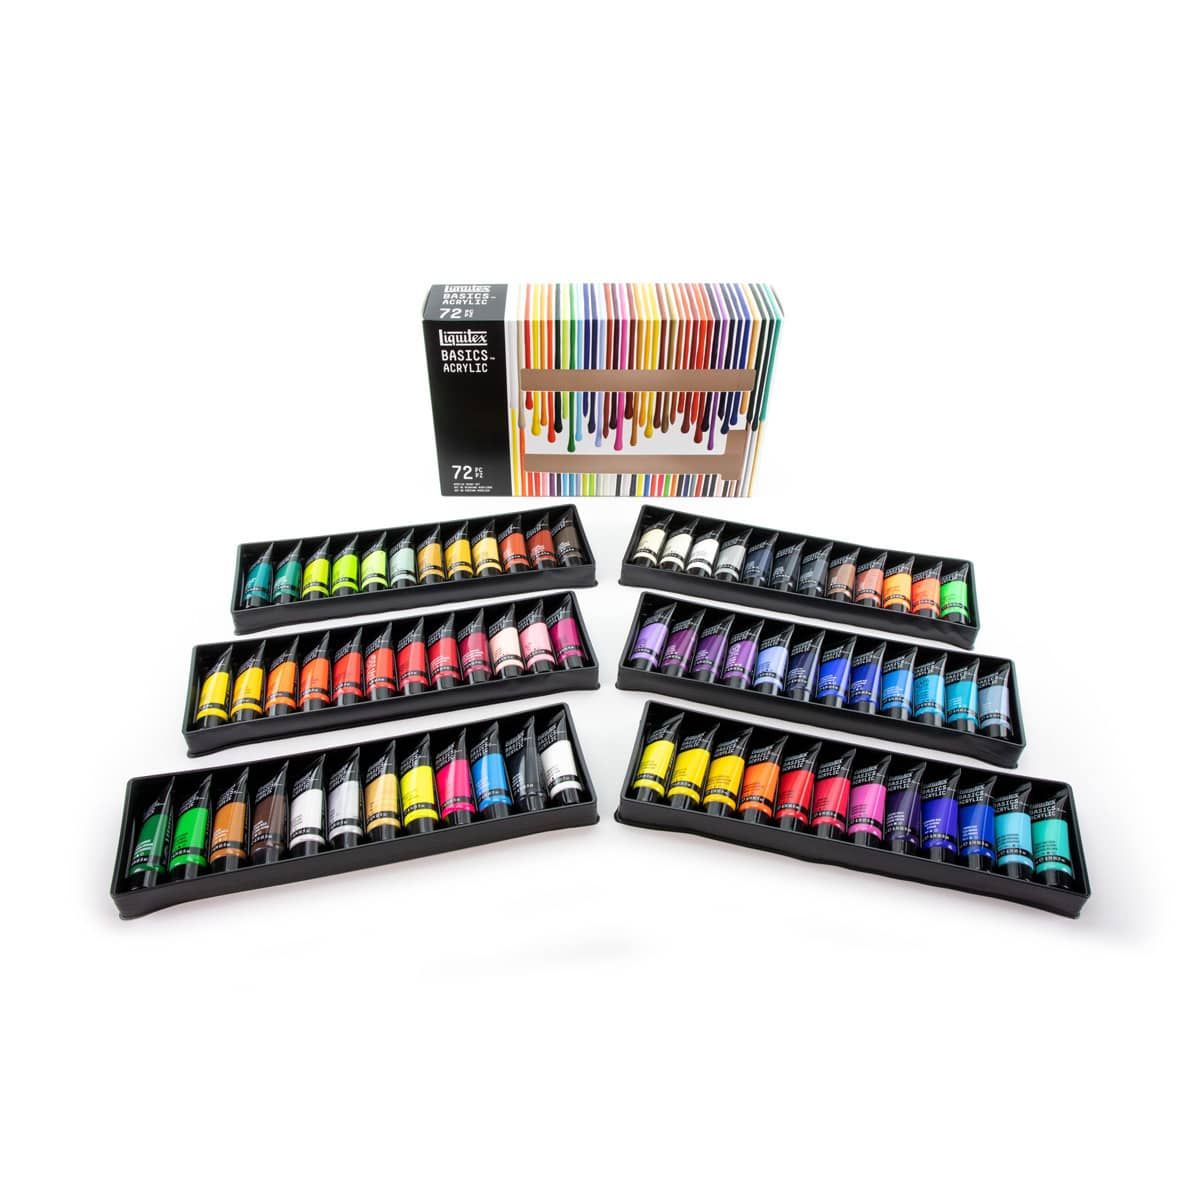 Liquitex BASICS® Acrylic 48 Color Set